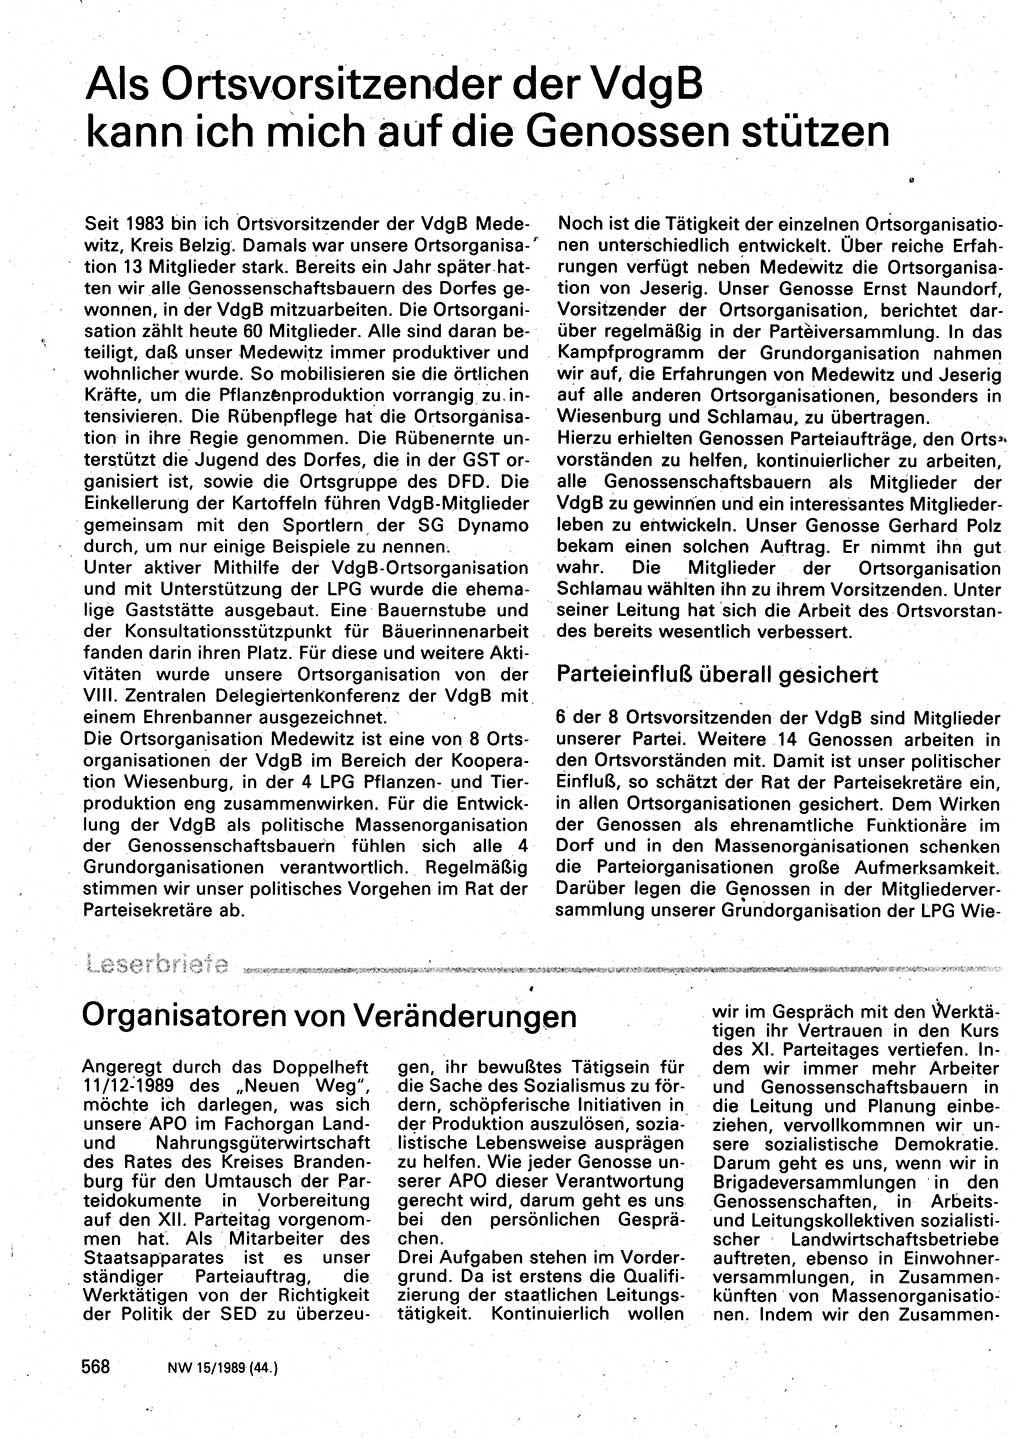 Neuer Weg (NW), Organ des Zentralkomitees (ZK) der SED (Sozialistische Einheitspartei Deutschlands) für Fragen des Parteilebens, 44. Jahrgang [Deutsche Demokratische Republik (DDR)] 1989, Seite 568 (NW ZK SED DDR 1989, S. 568)